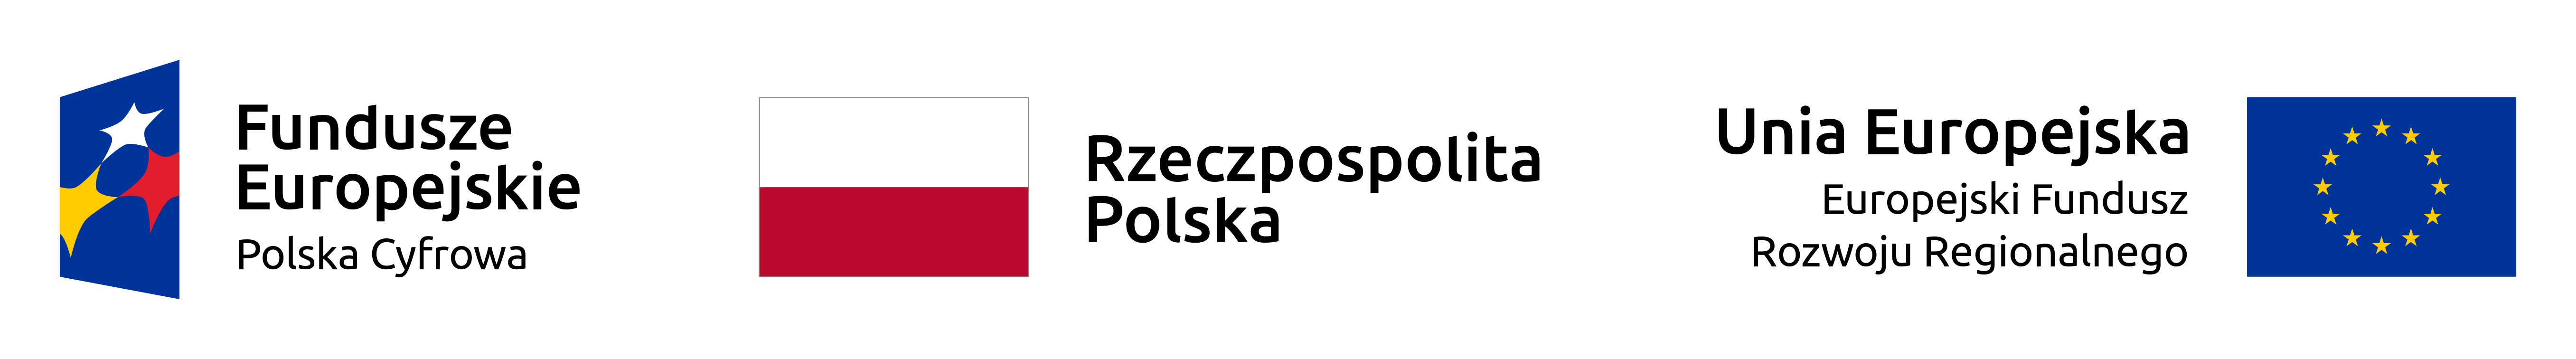 Pakiet logotypów beneficjentów, od lewej: Fundusze Europejskie Polska Cyfrowa, Rzeczpospolita Polska, Unia Europejska Europejski Fundusz Rozwoju Regionalnego